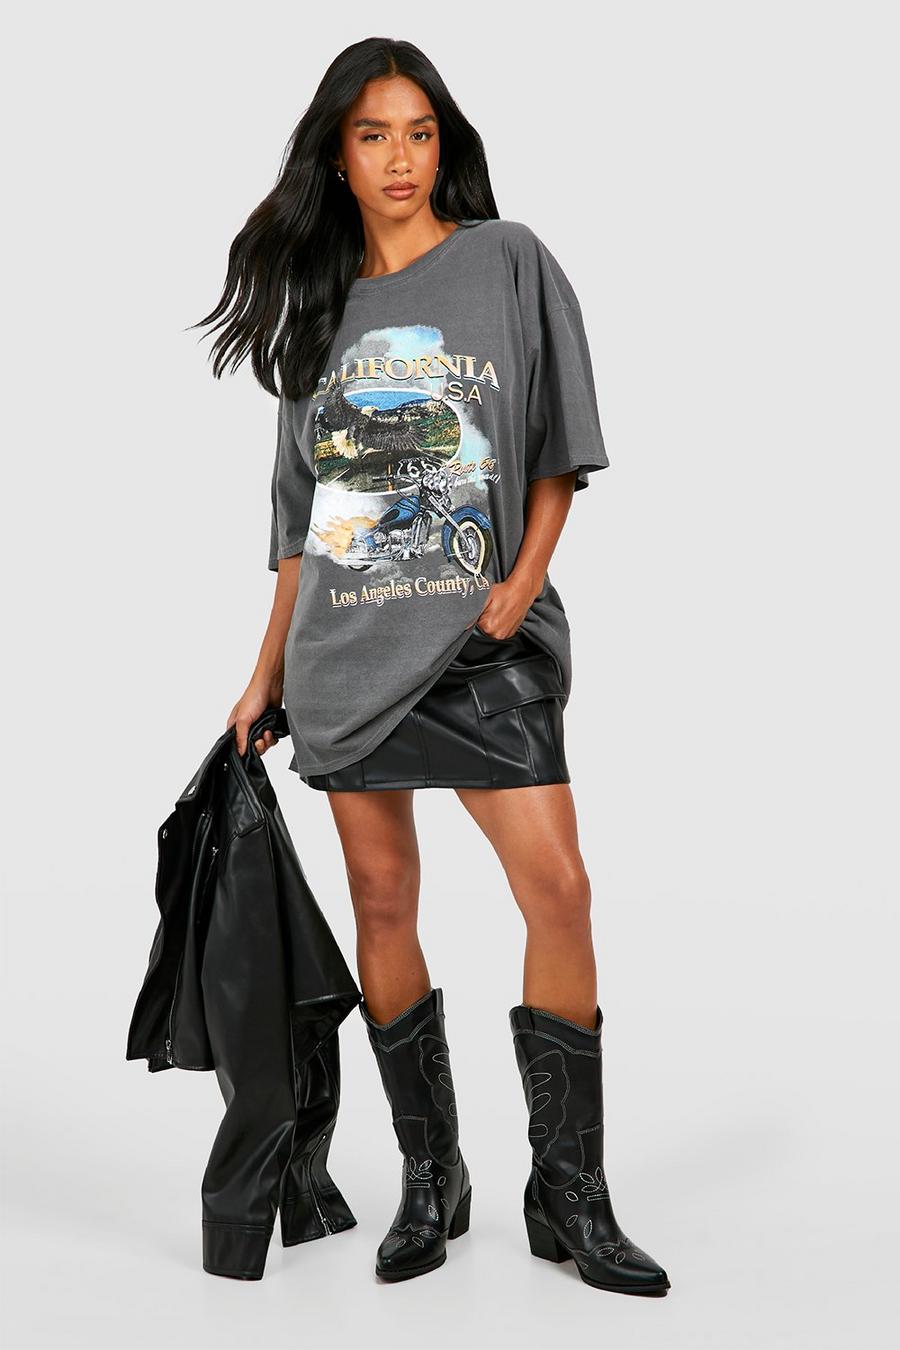 Petite - T-shirt oversize délavé à slogan California, Charcoal